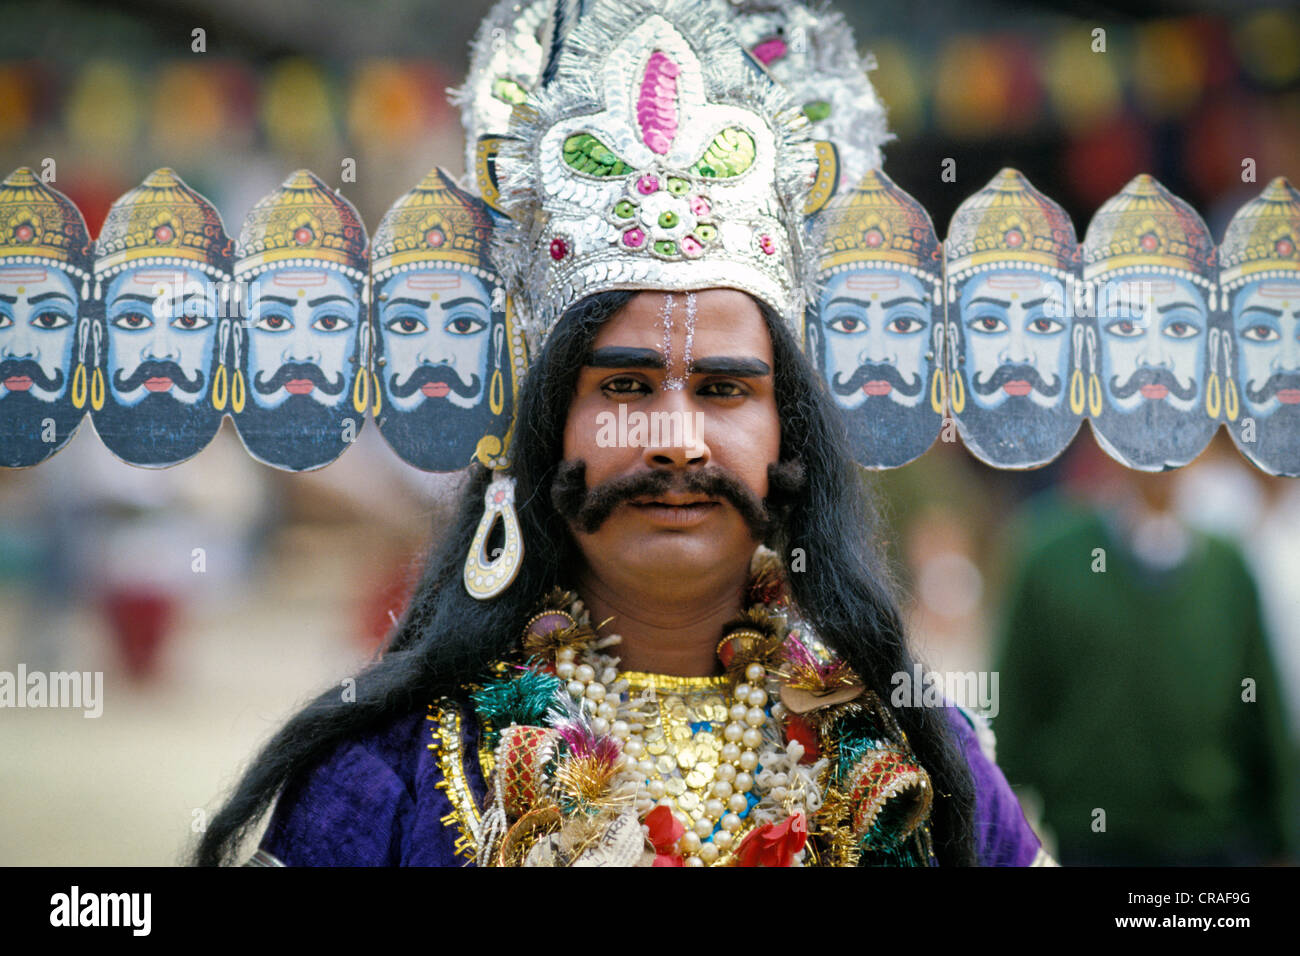 Homme vêtu comme un démon, Ravana, roi des Rakshasas à partir de l'épique Ramayana, New Delhi, Inde, Asie Banque D'Images